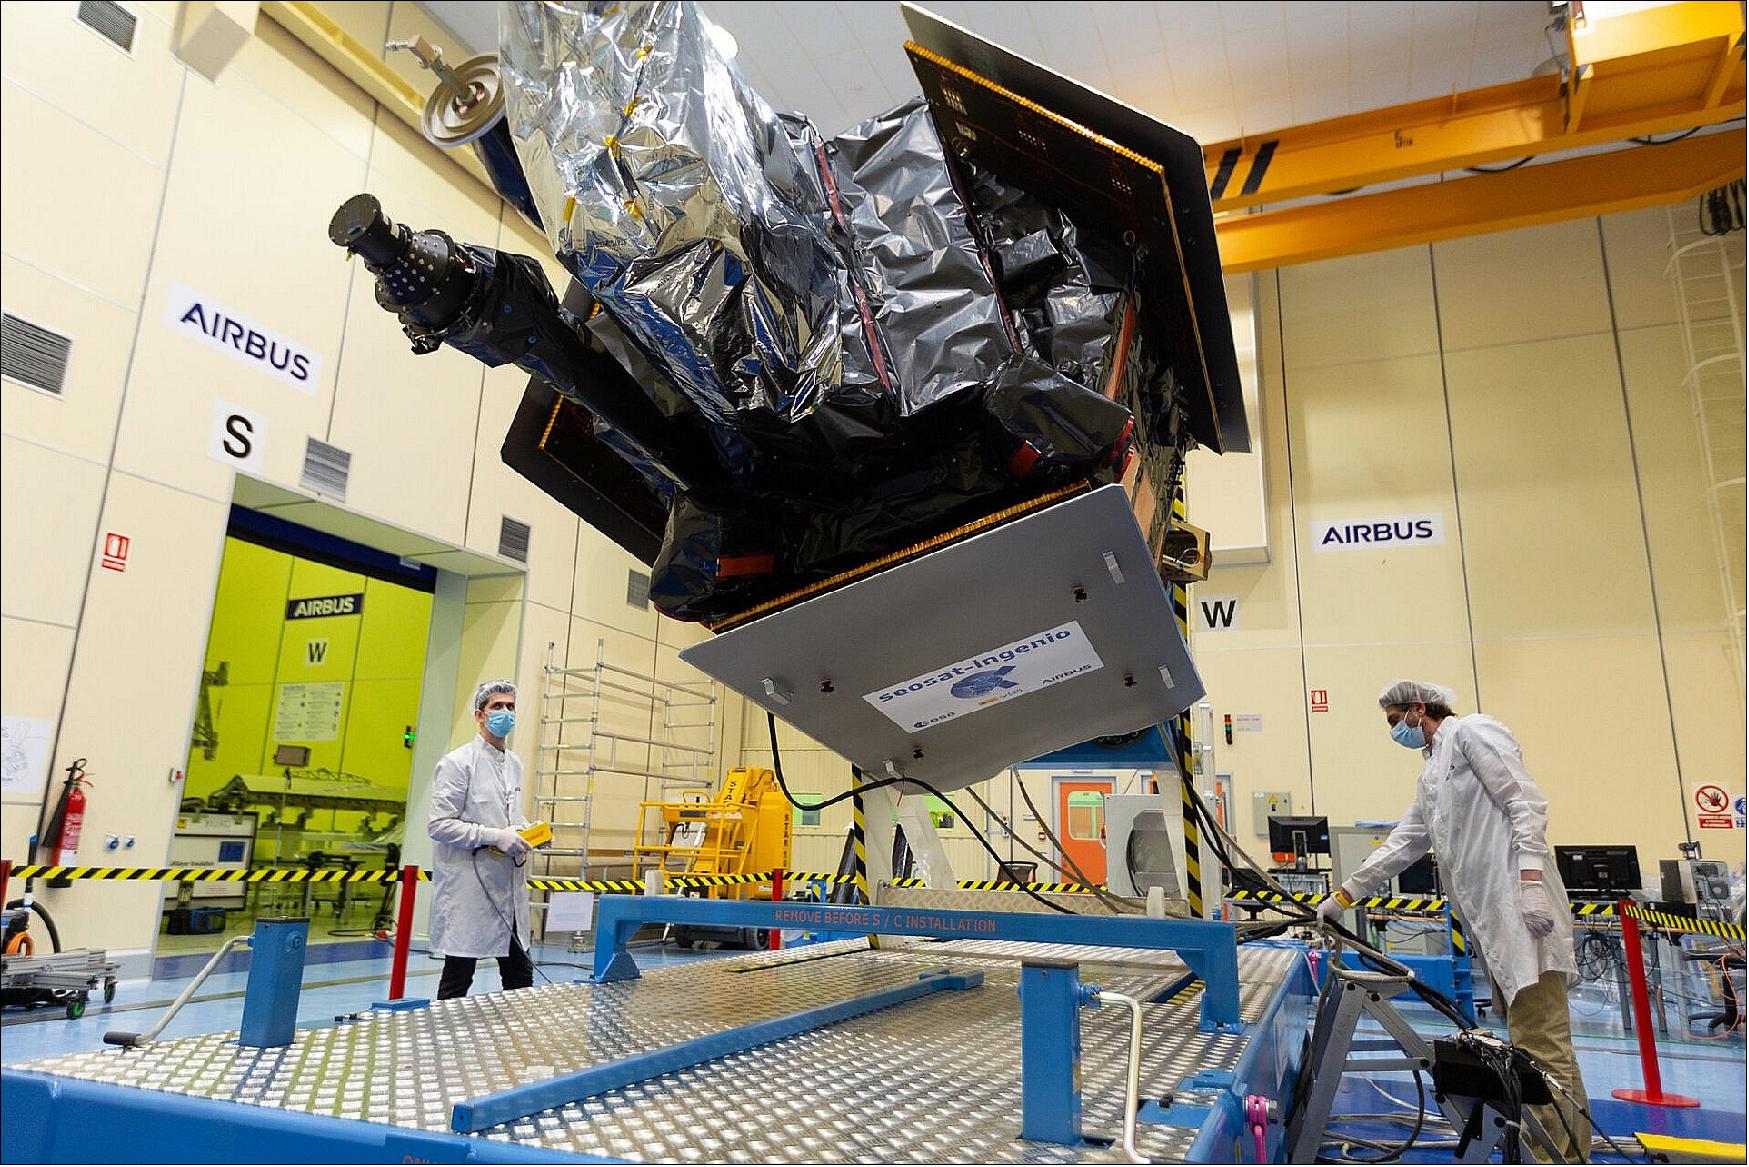 Figure 14: Photo of the SEOSAT-Ingenio spacecraft at Airbus prior to shipment (image credit: Airbus)